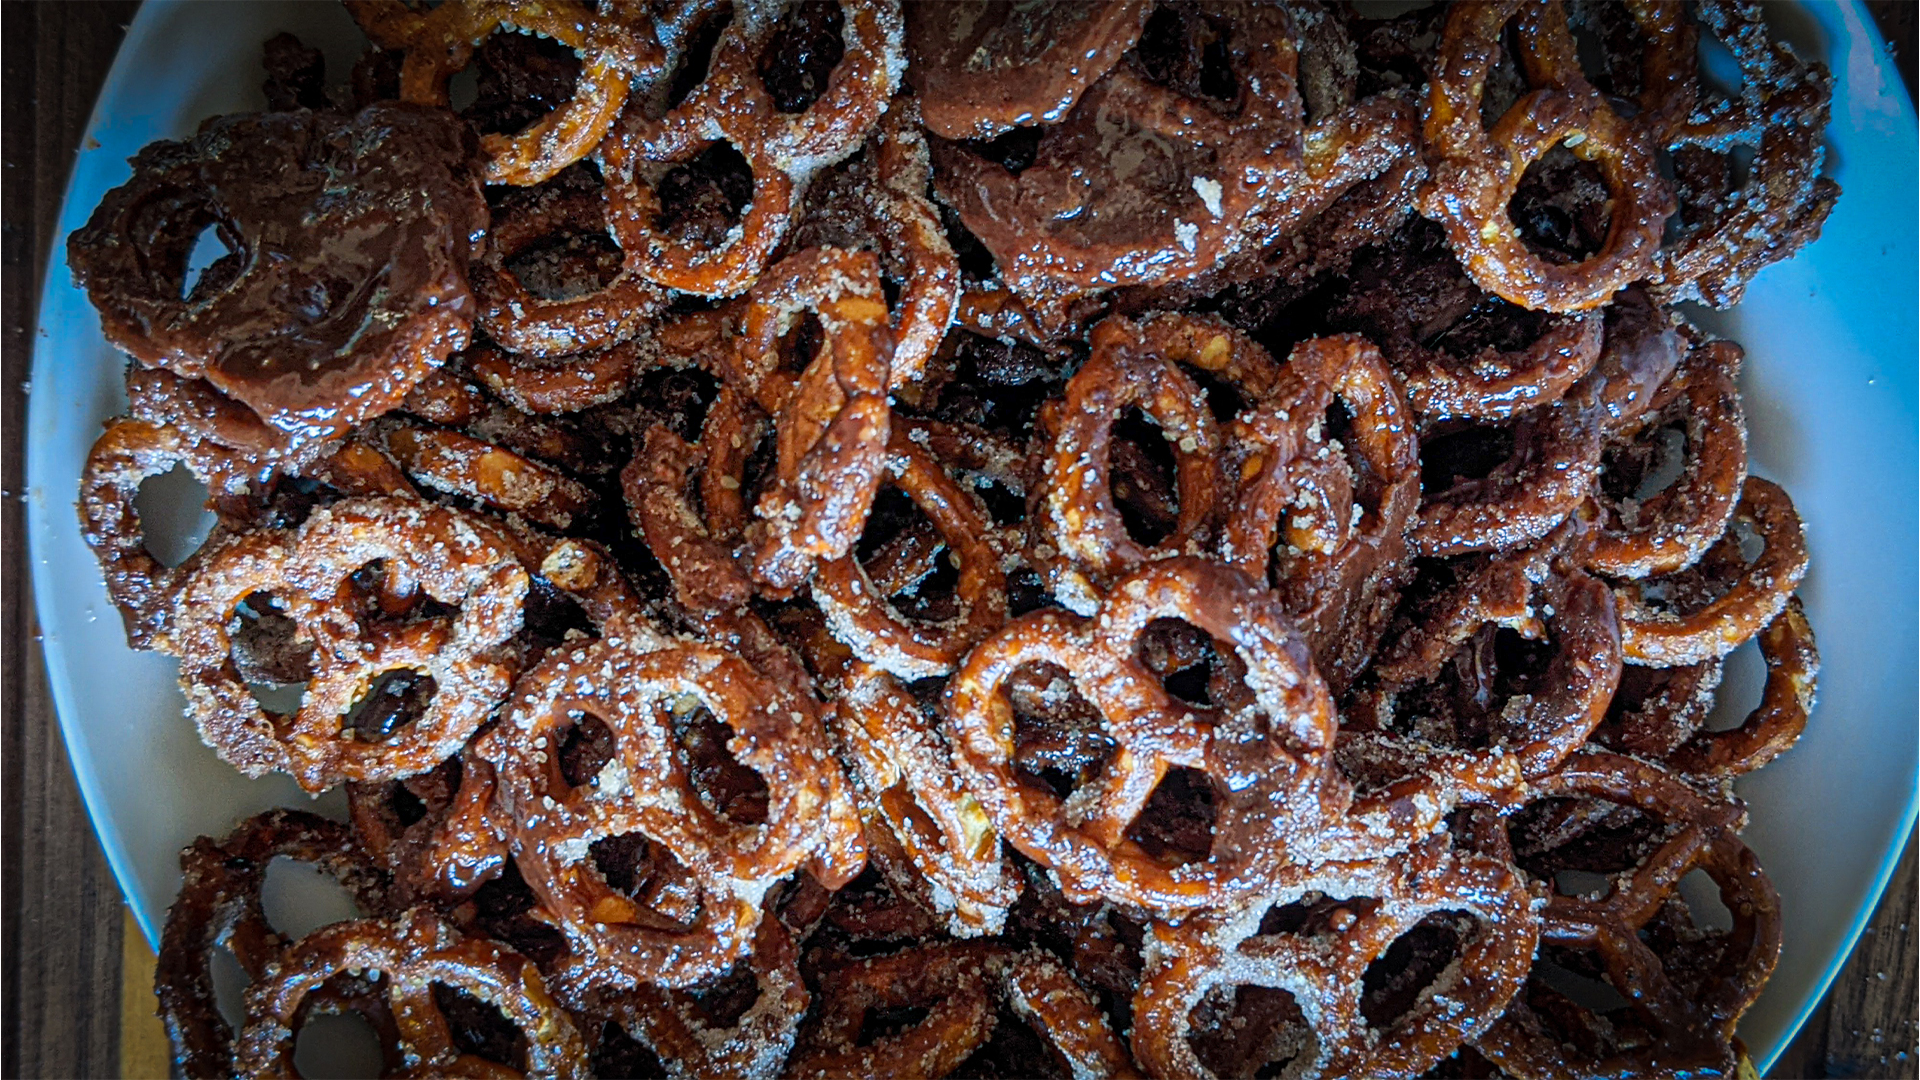 Cinnamon pretzels